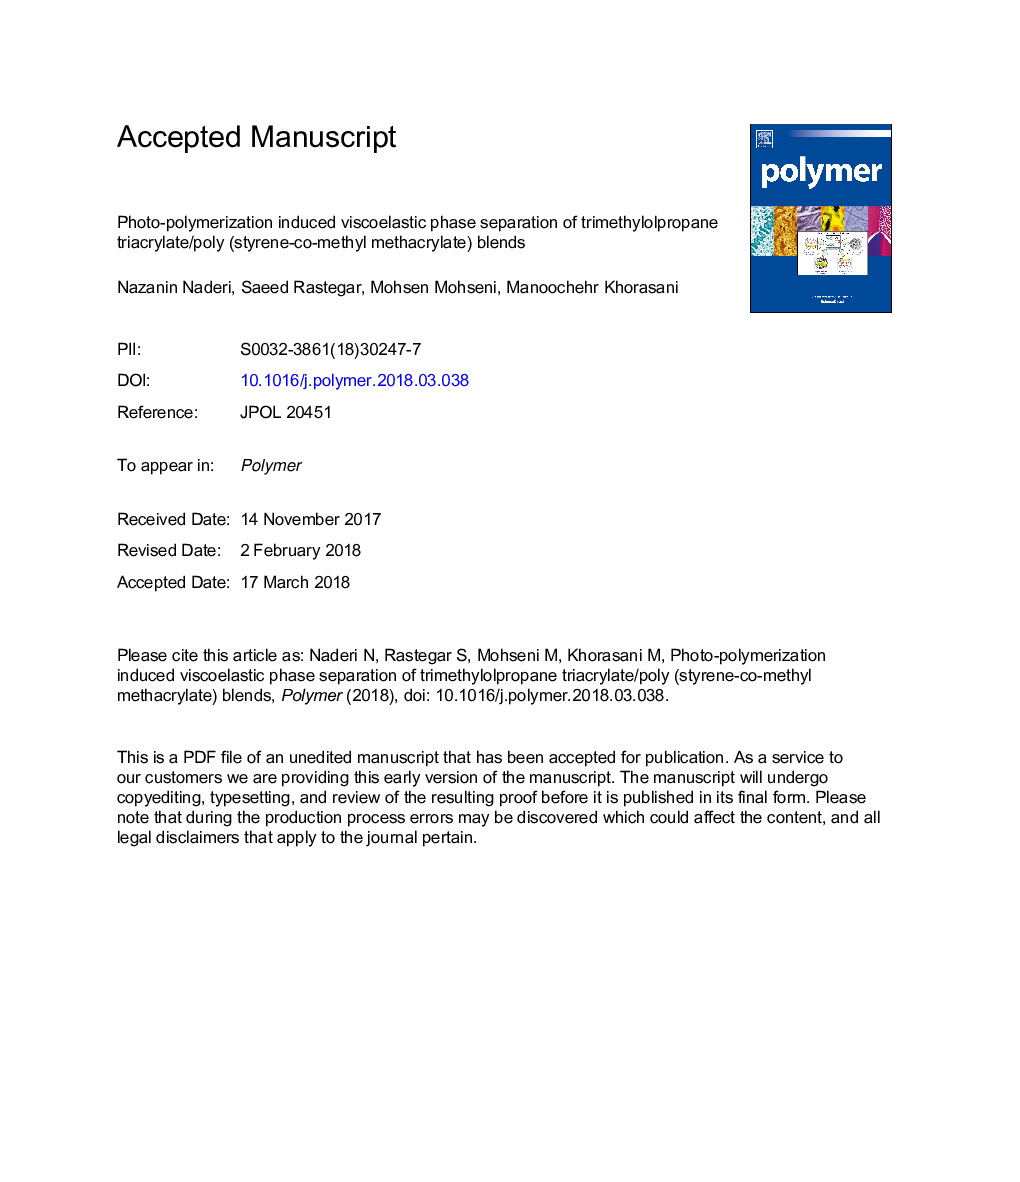 جداسازی فاز ویسکوالاستیک از پلیمراز عکس حاصل از ترکیب تریمیمیلل پروپان تریاکریلات / پلی (استایرن و متیل متاکریلات)